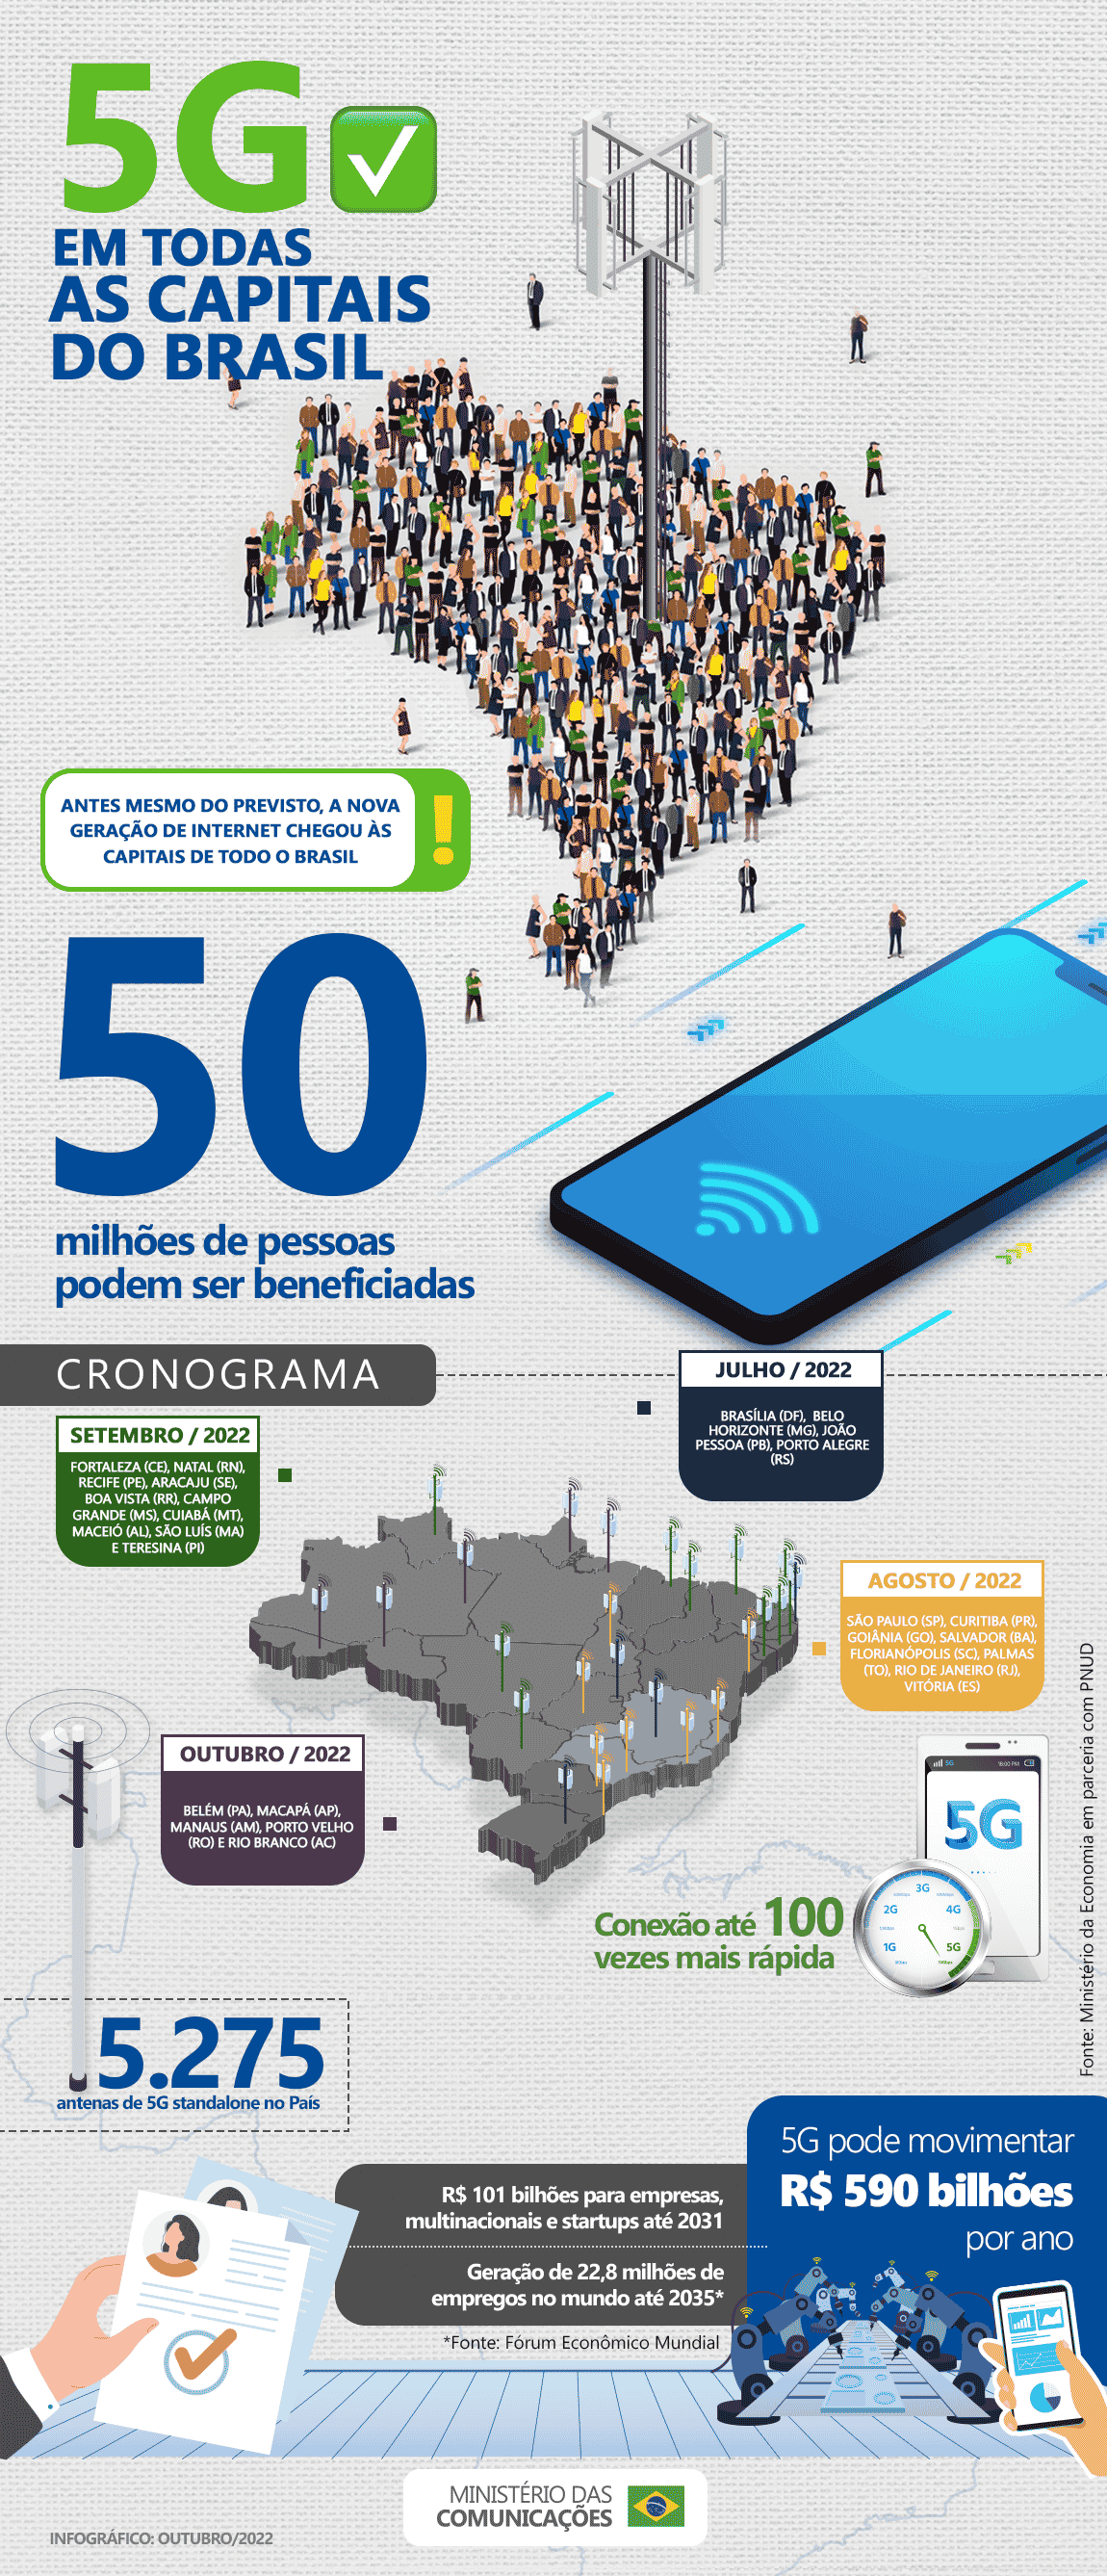 Expansão do 5G "puro" no Brasil